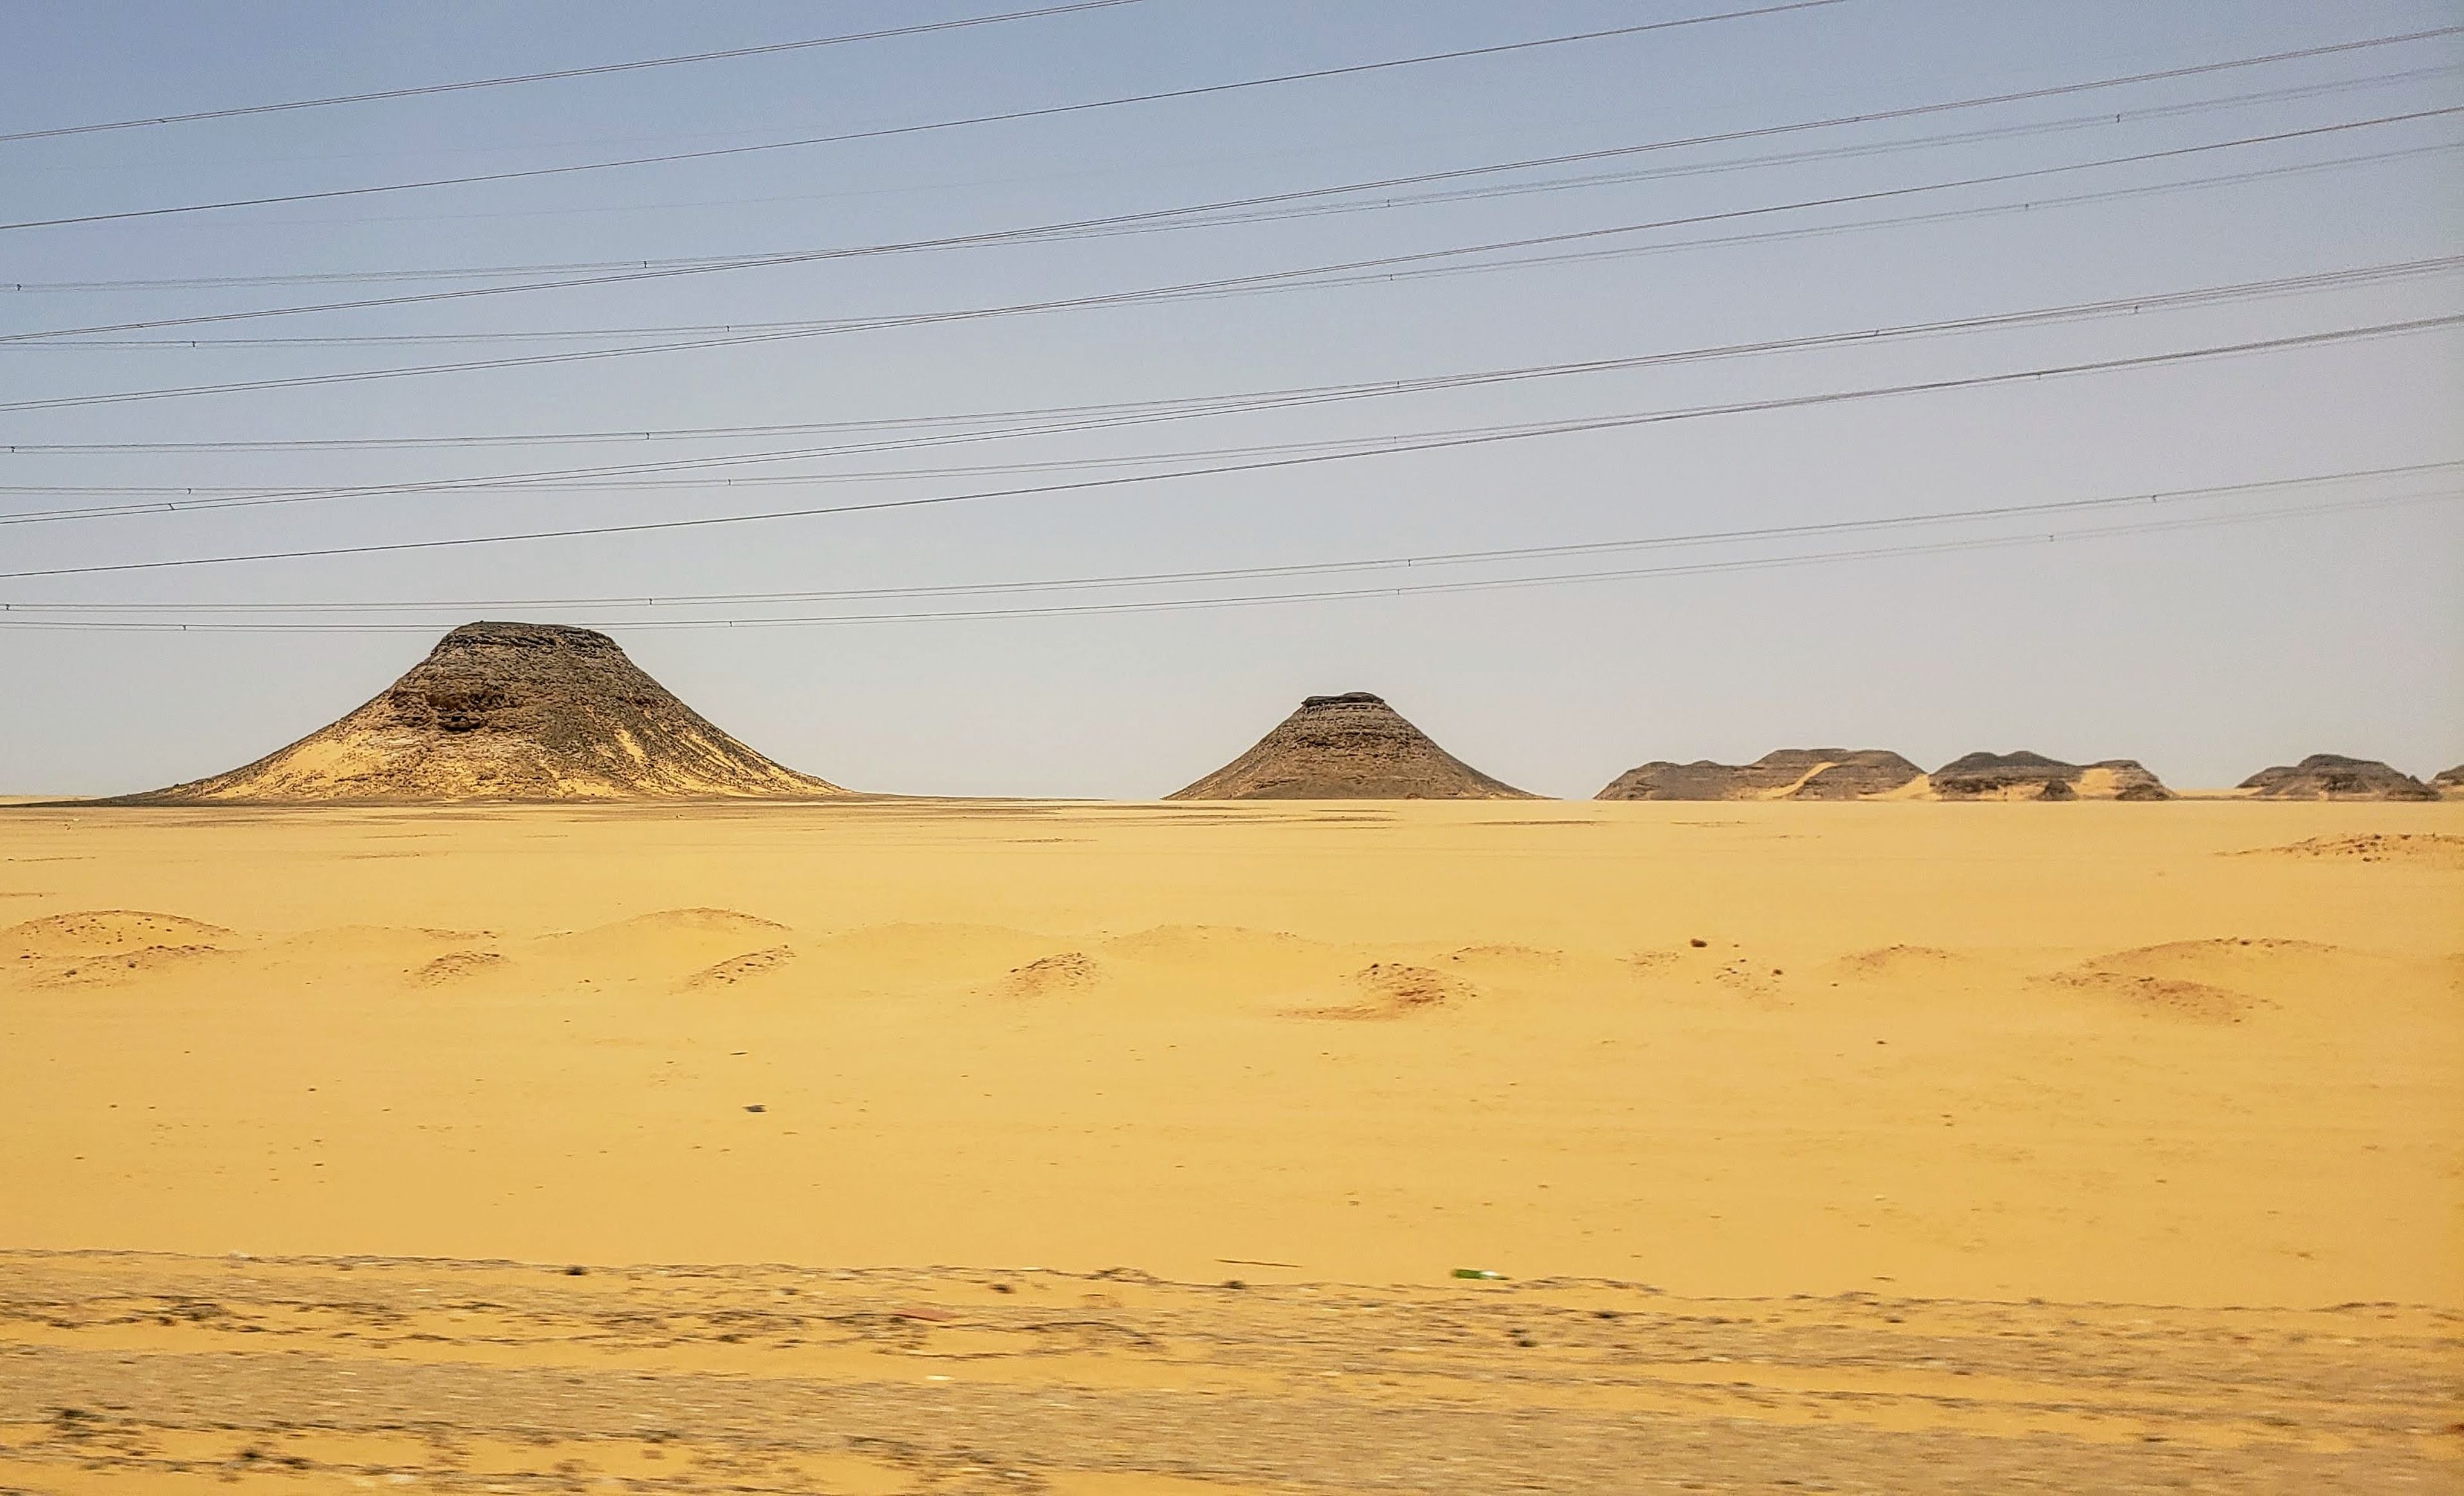 En el recorrido de Asuán a Abu Simbel por carretera se pueden observar las pirámides naturales de roca que emergen en medio del desierto del Sahara.